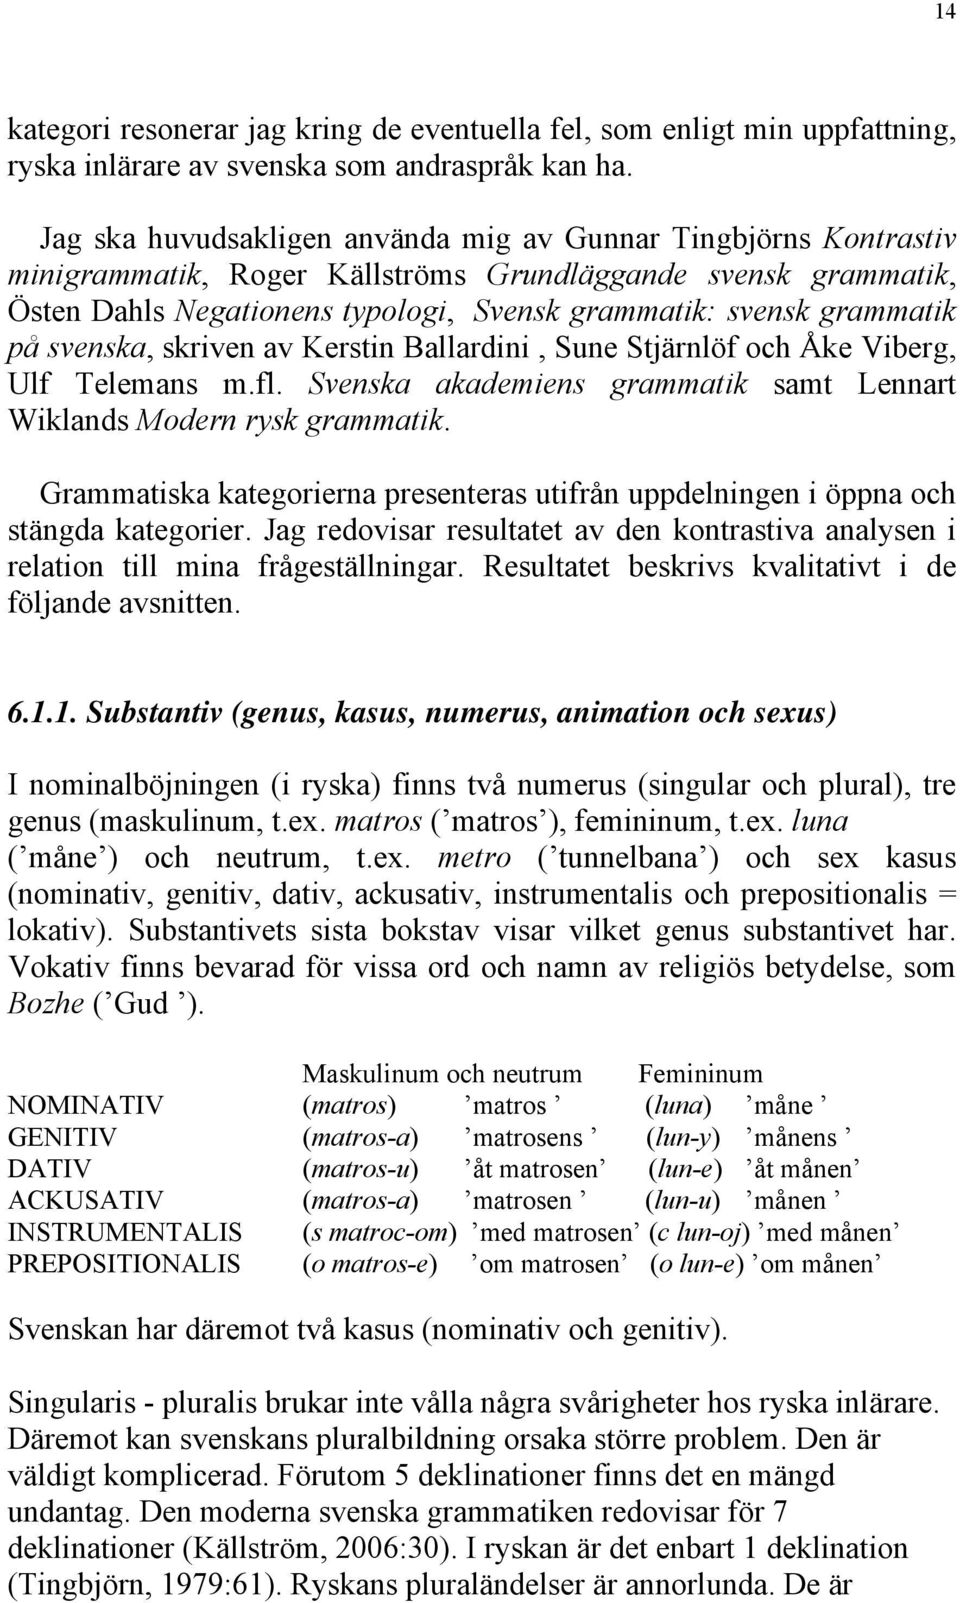 på svenska, skriven av Kerstin Ballardini, Sune Stjärnlöf och Åke Viberg, Ulf Telemans m.fl. Svenska akademiens grammatik samt Lennart Wiklands Modern rysk grammatik.